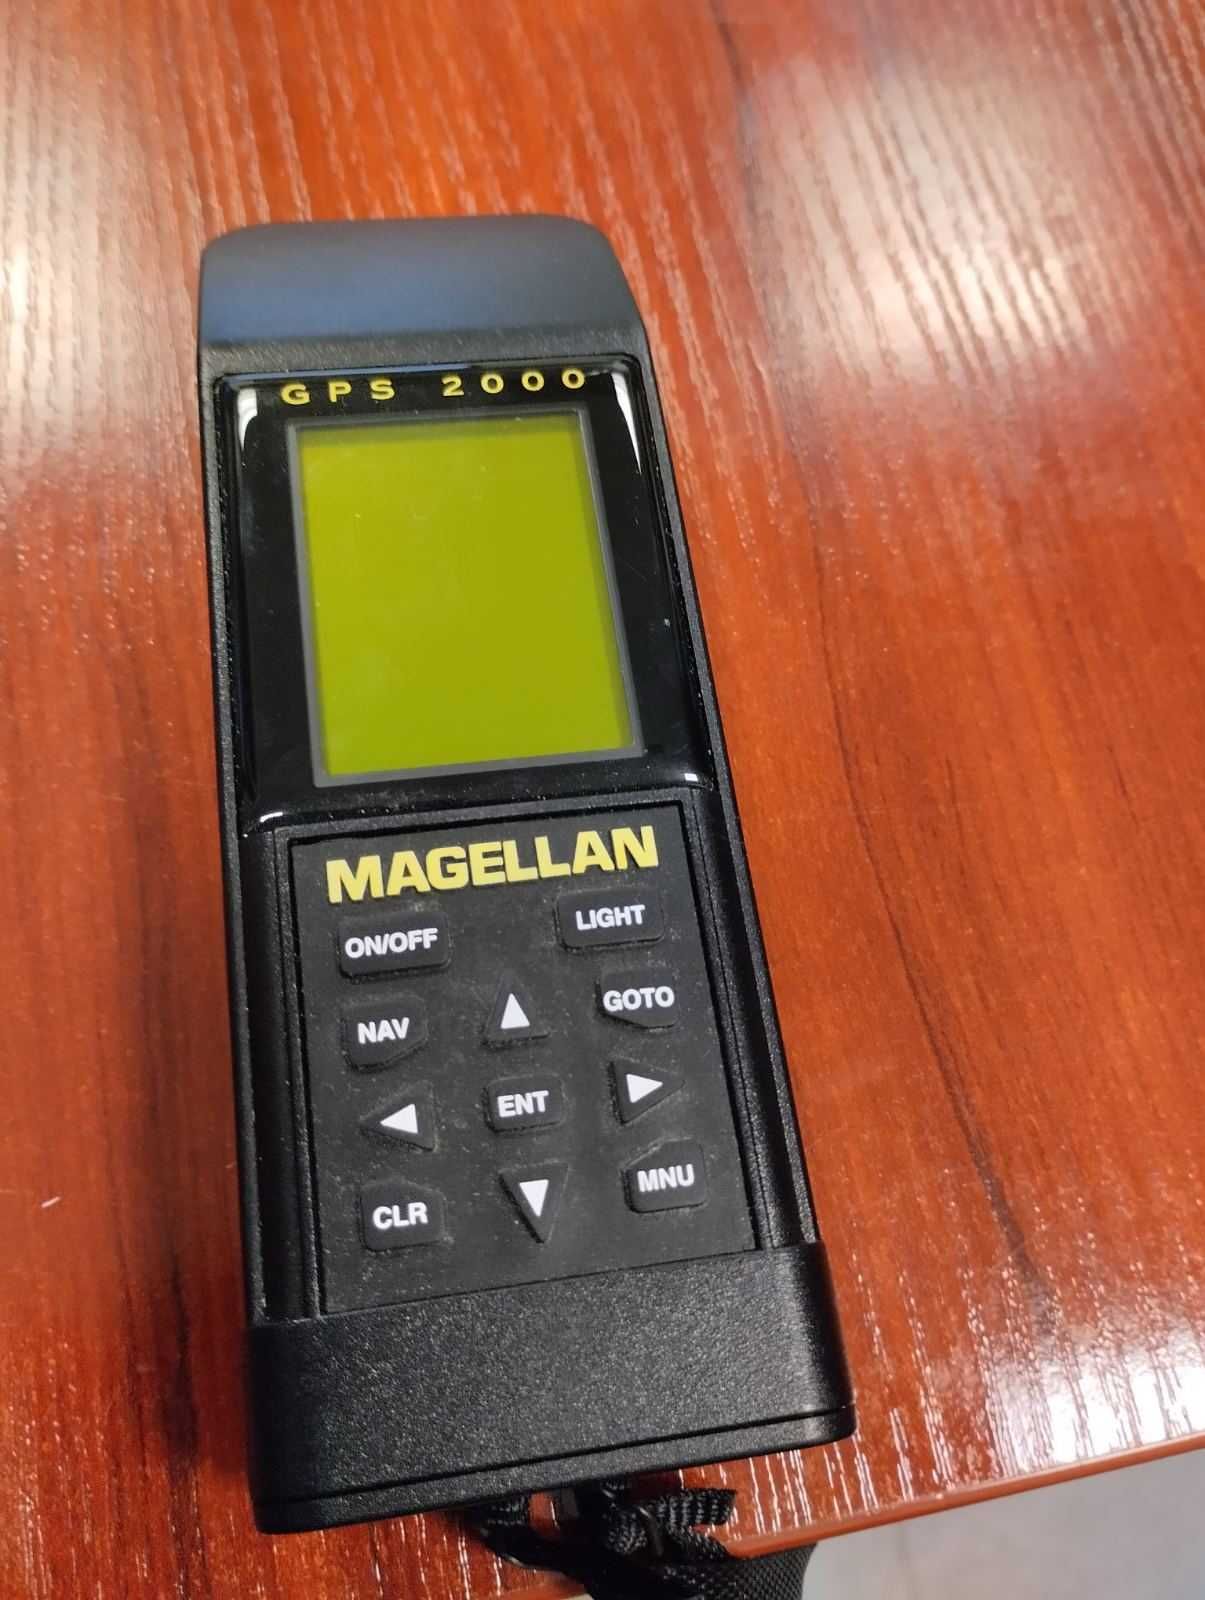 GPS Magellan 2000